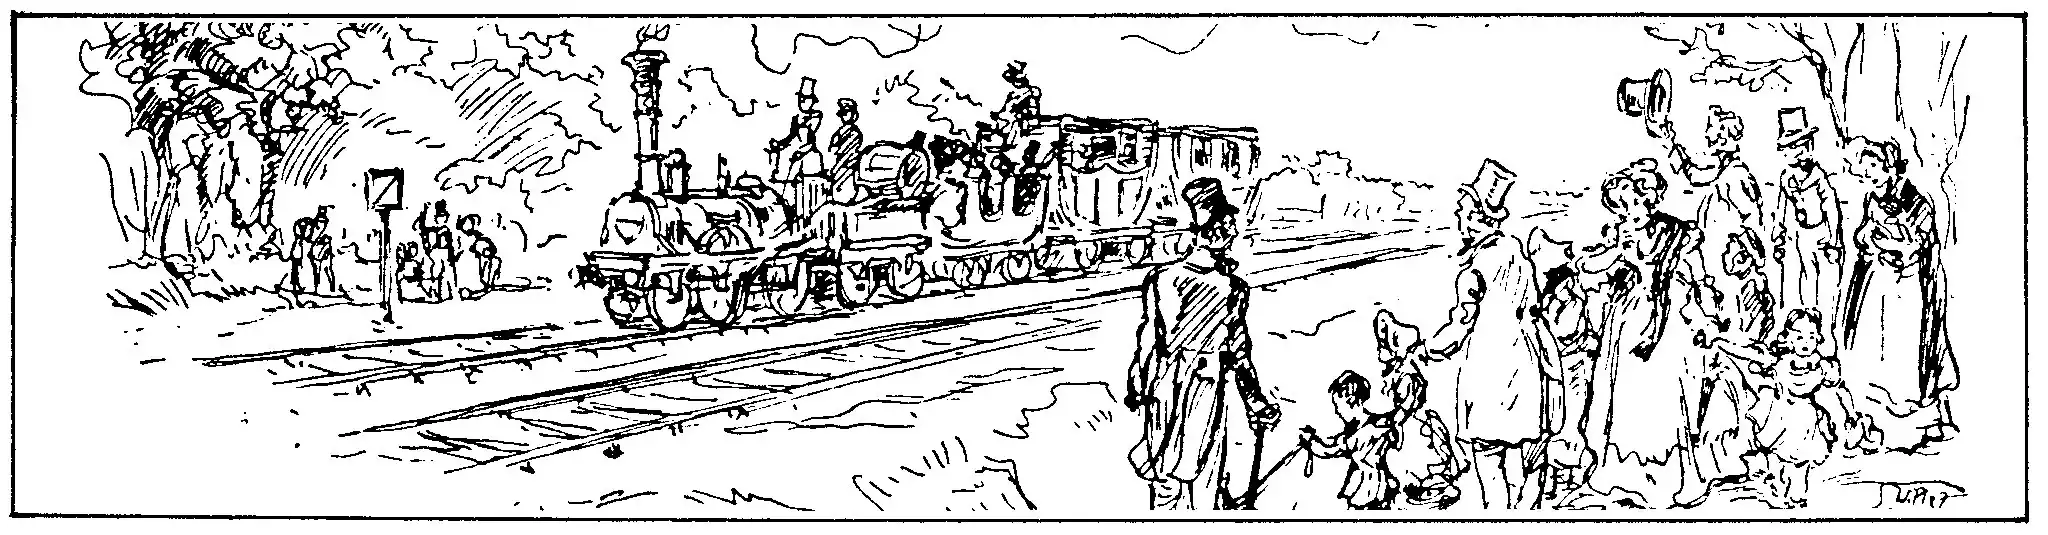 Begrüßung der ersten Eisenbahn 1838, 1937